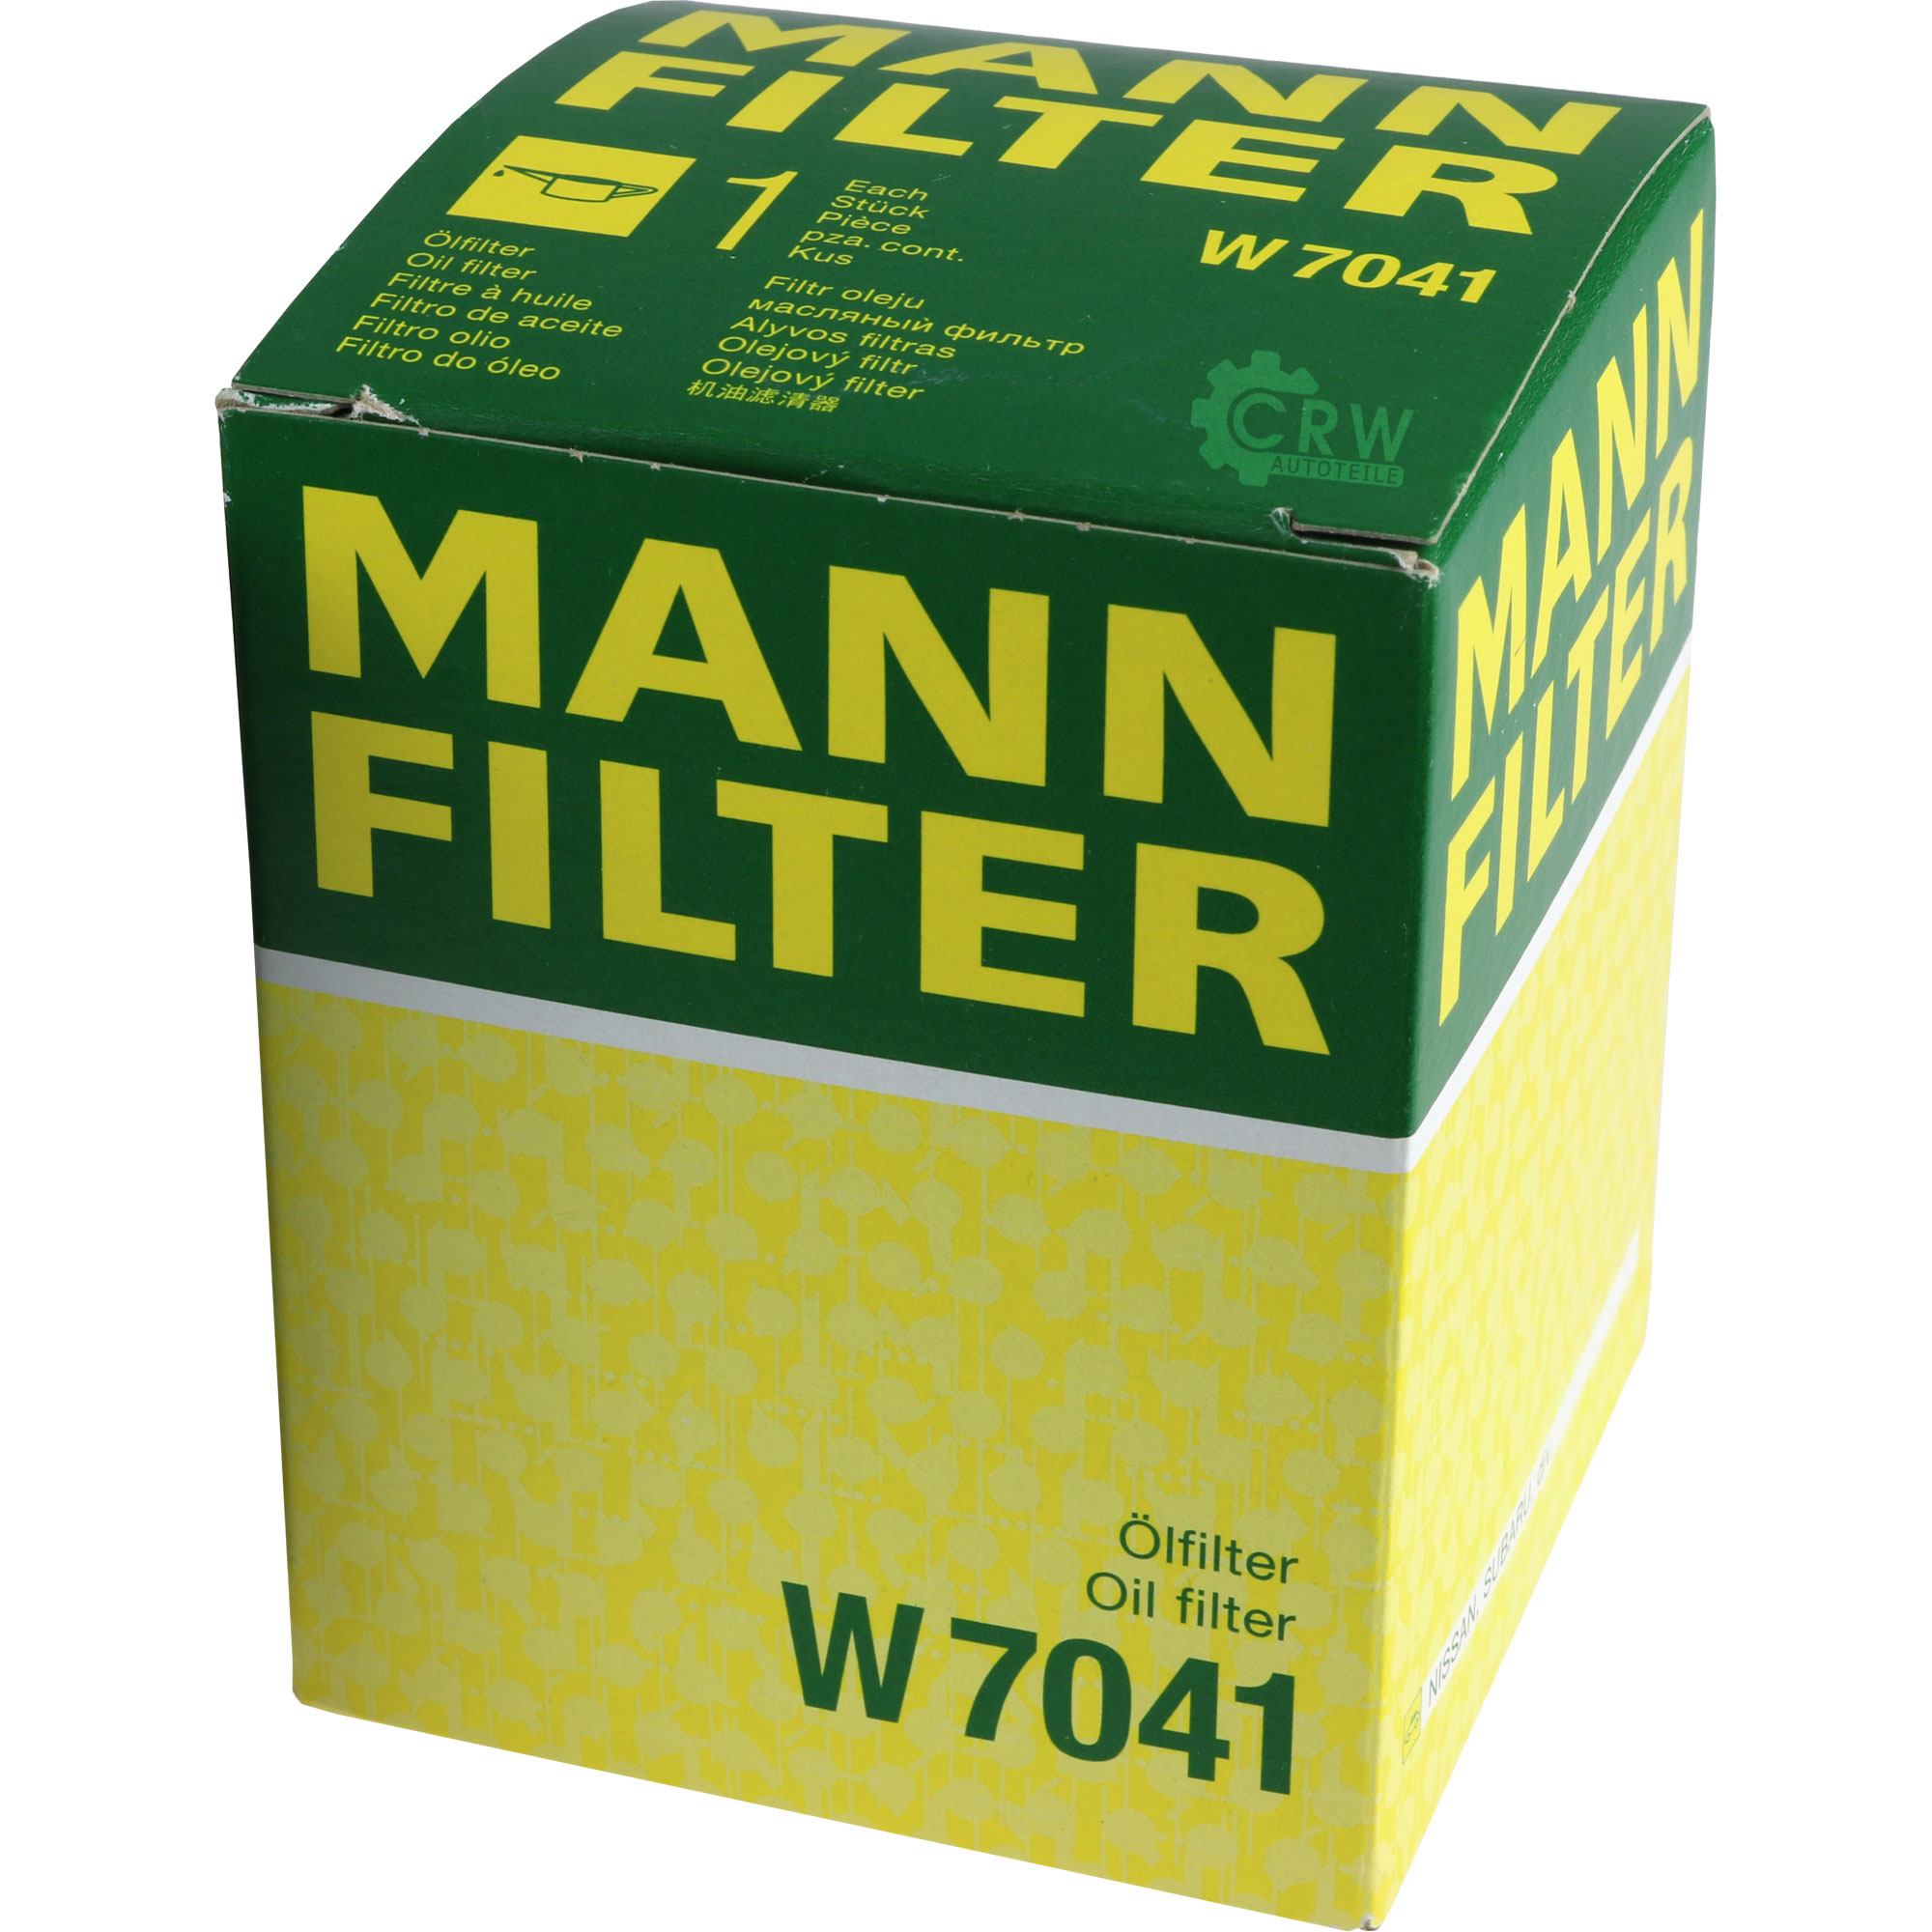 MANN-FILTER Ölfilter W 7041 Oil Filter